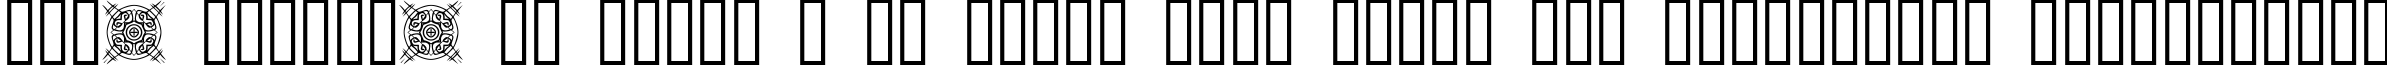 Пример написания шрифтом FontCo Designs 1 текста на украинском